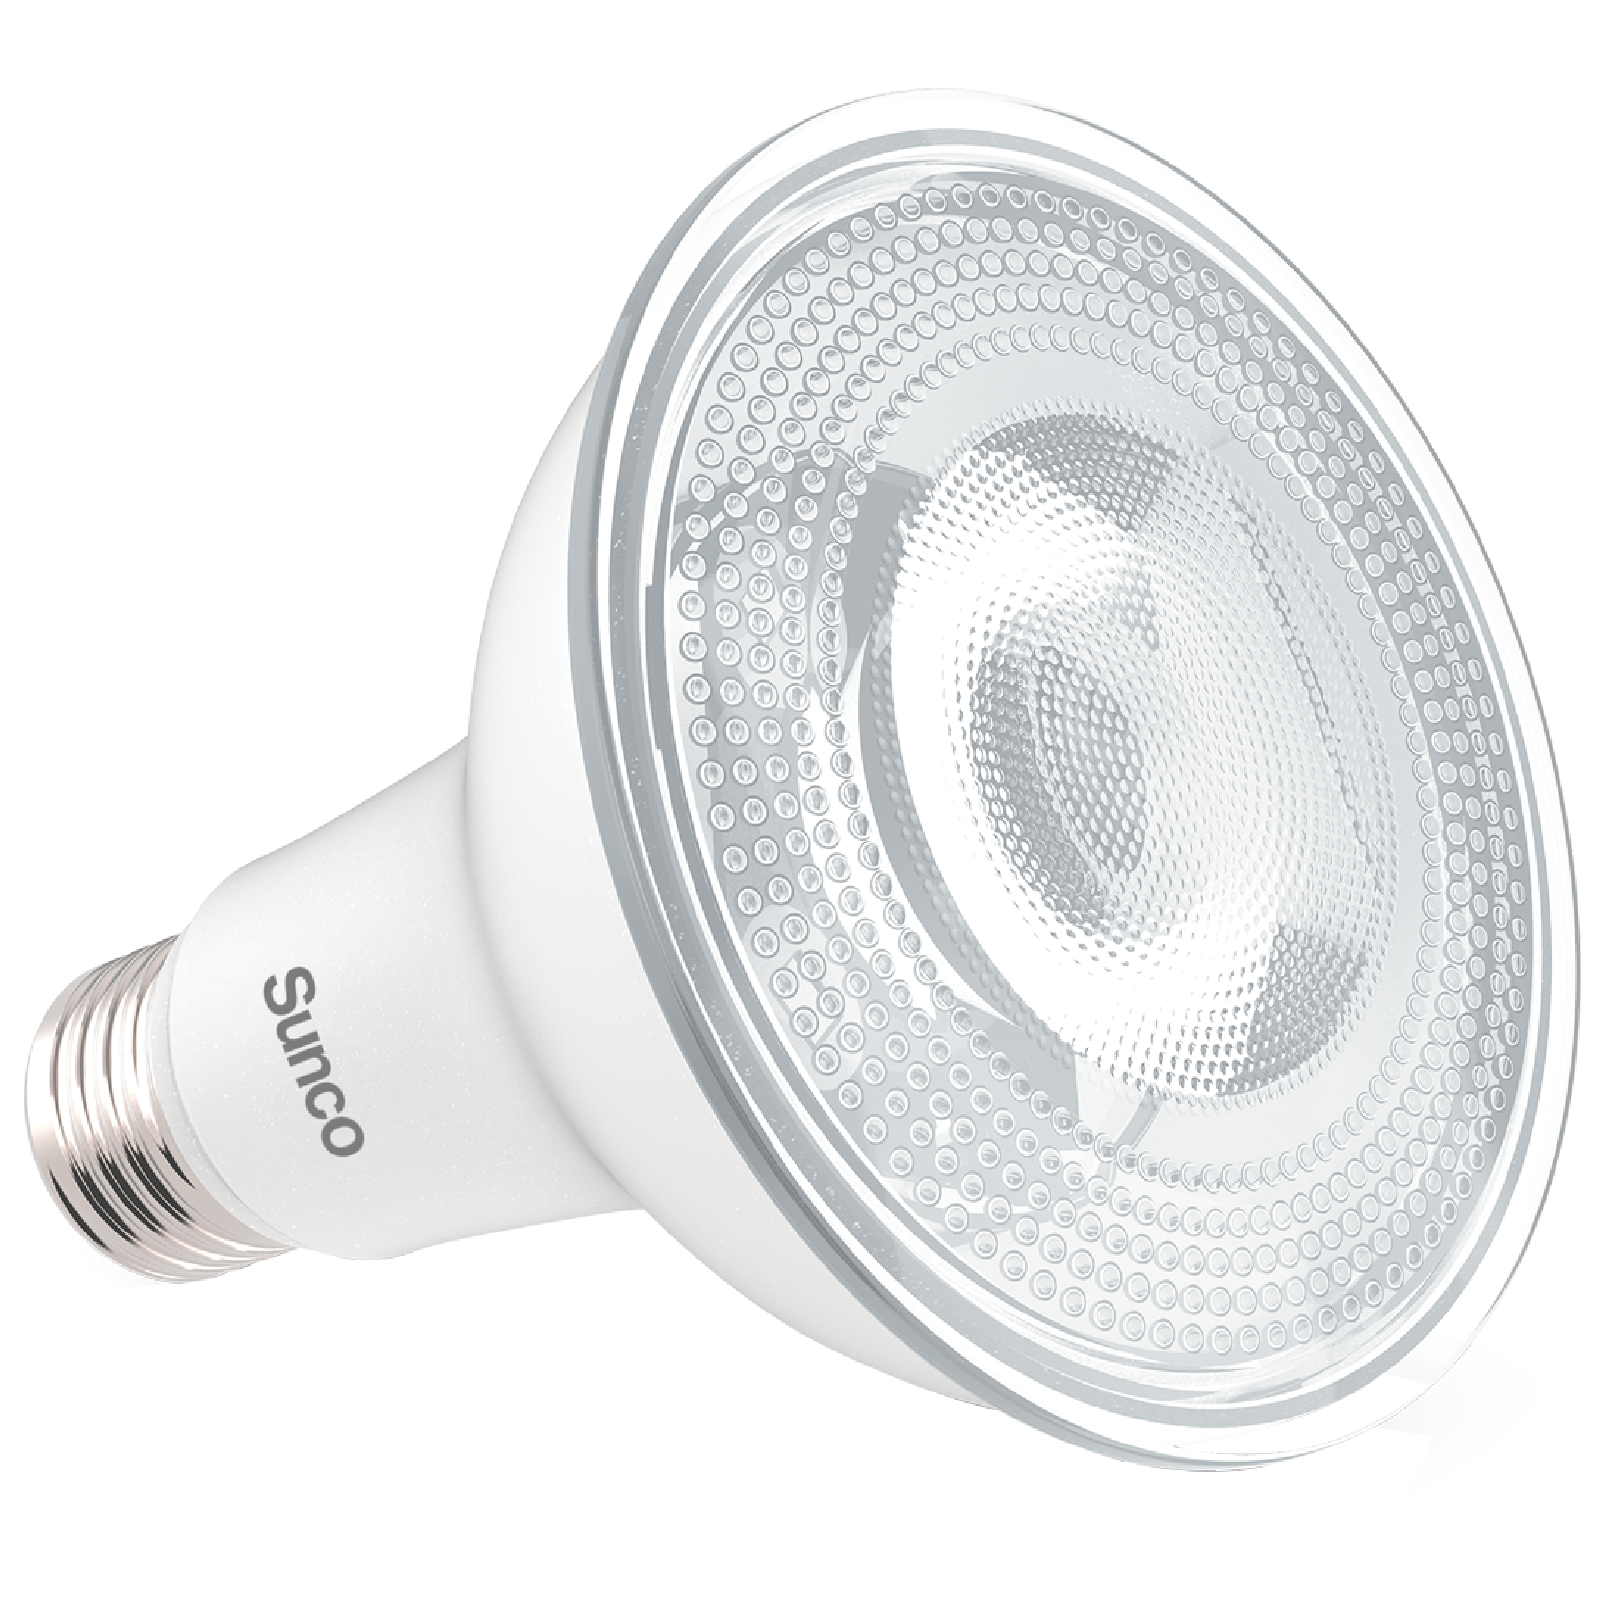 PAR30 LED Bulbs LED LIGHTING SUNCO – Sunco Lighting